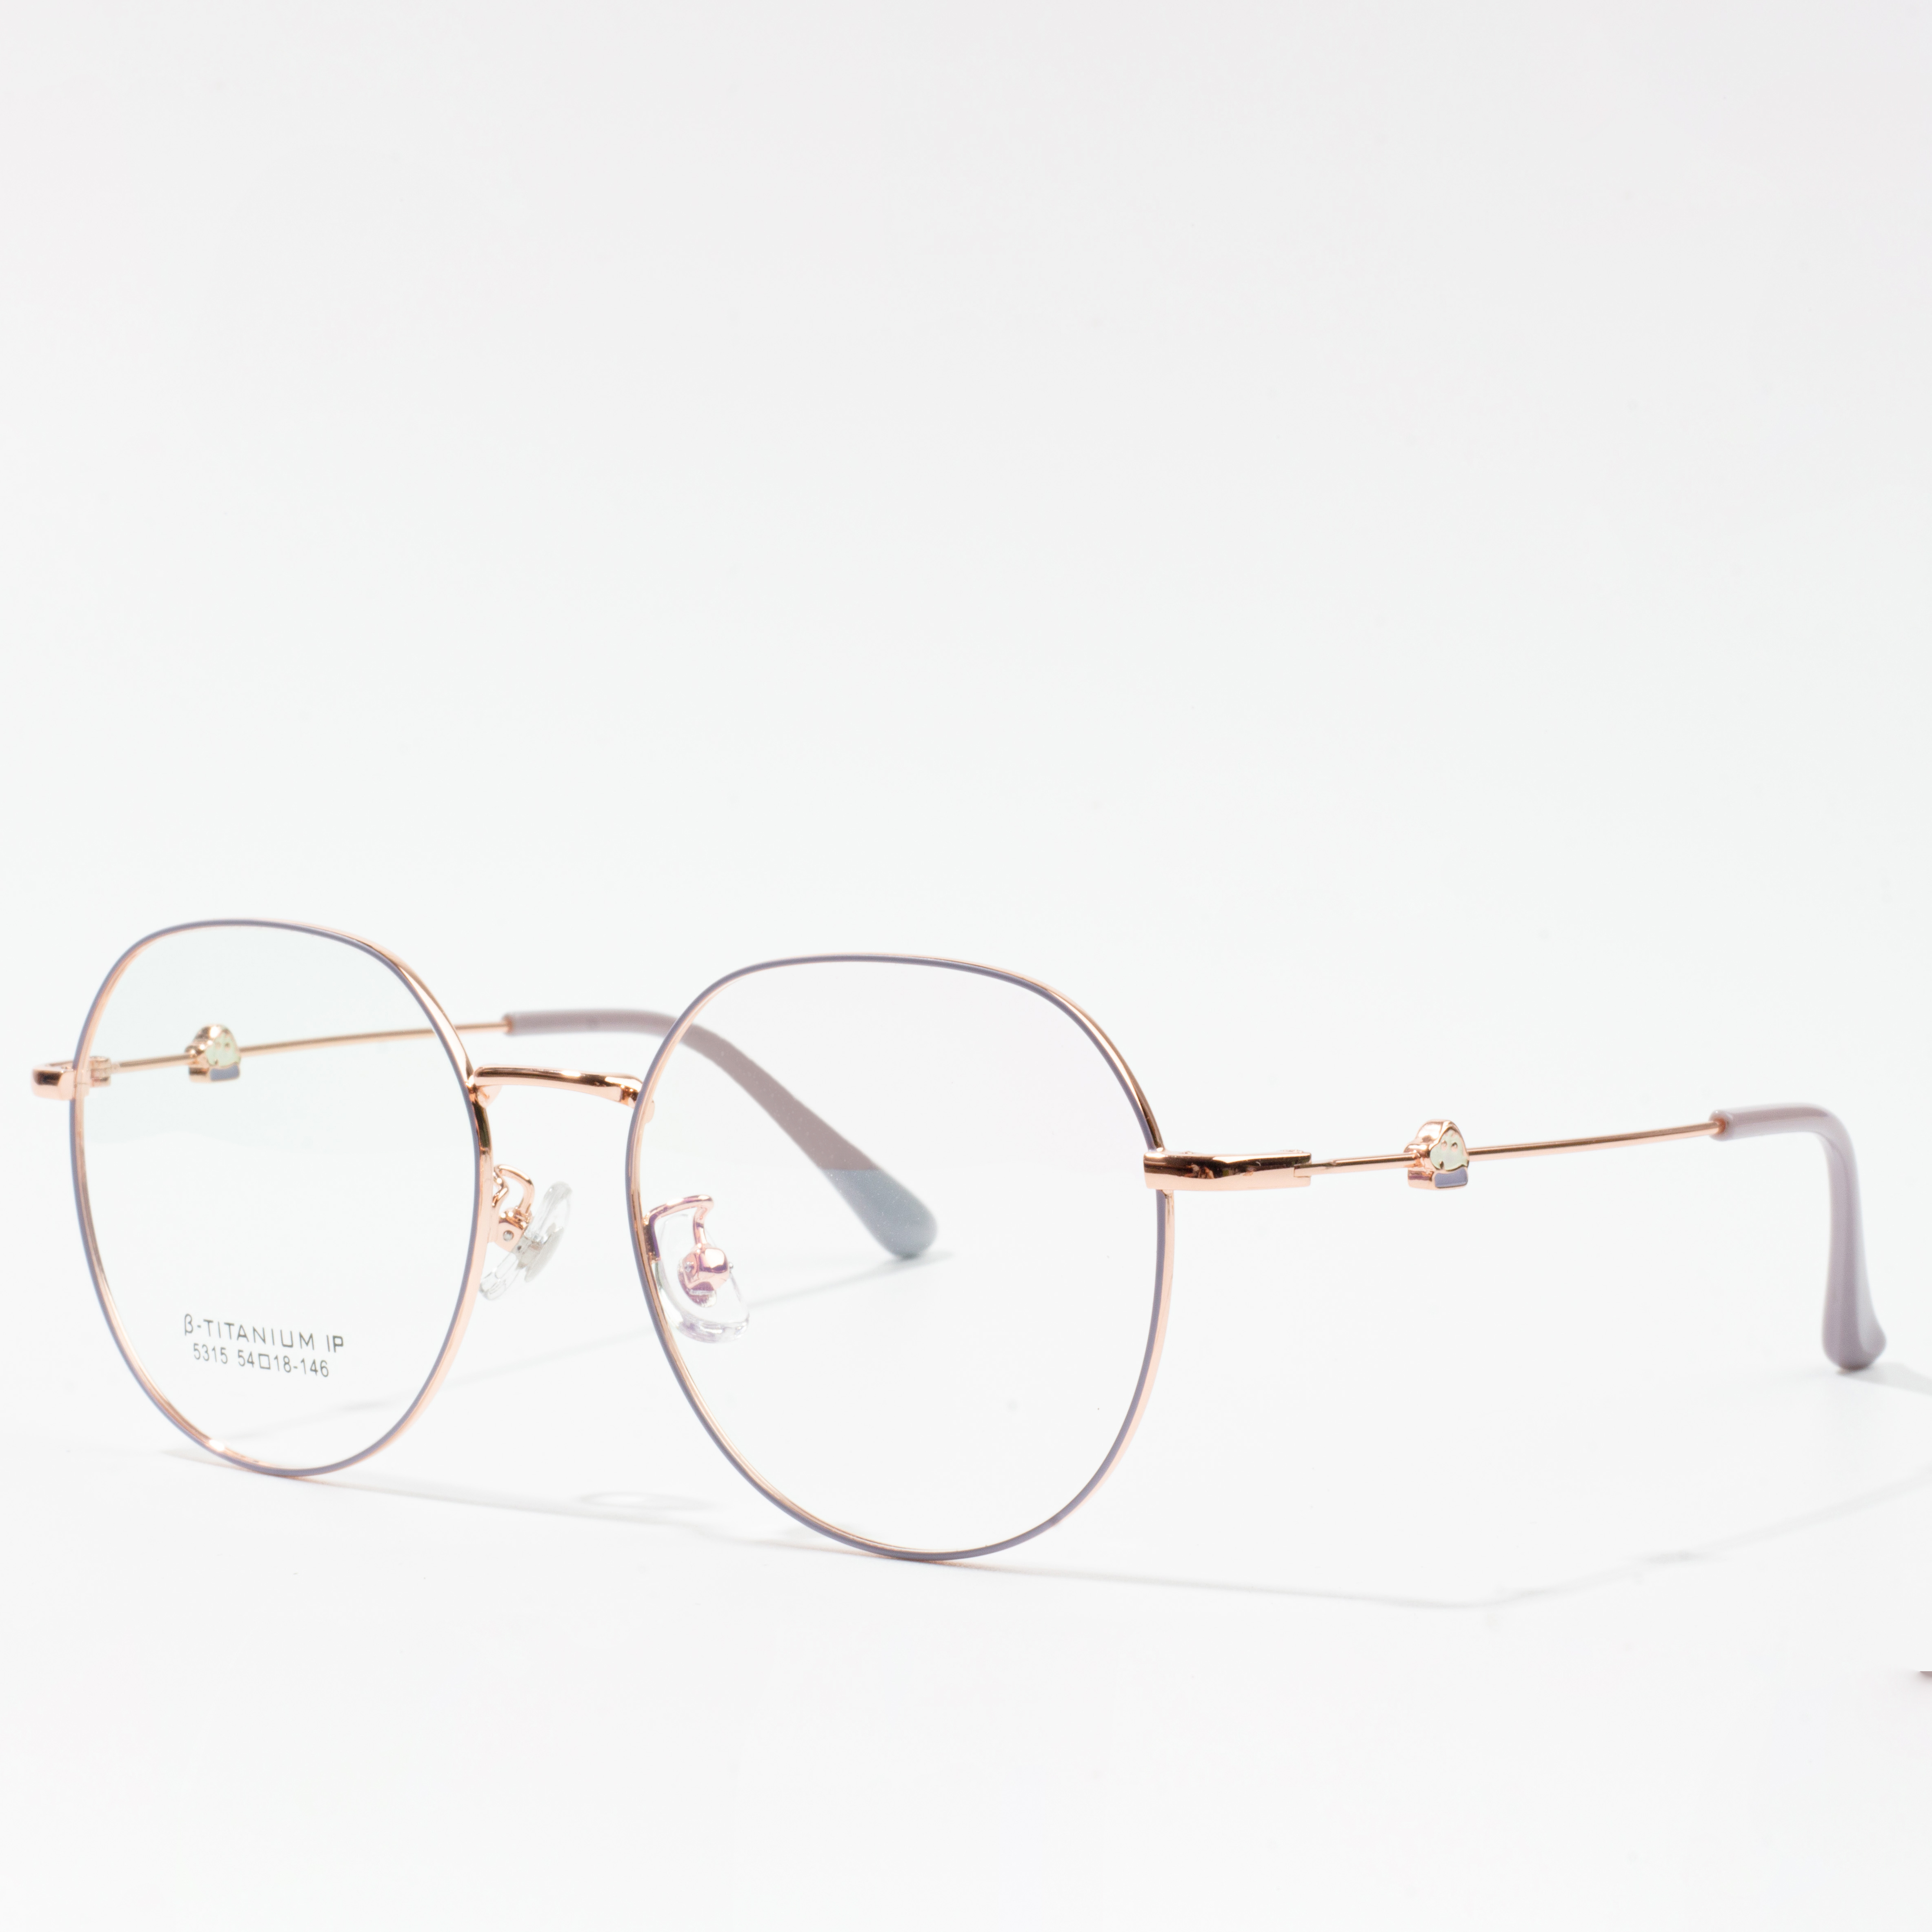 "kacamata frame titanium kab